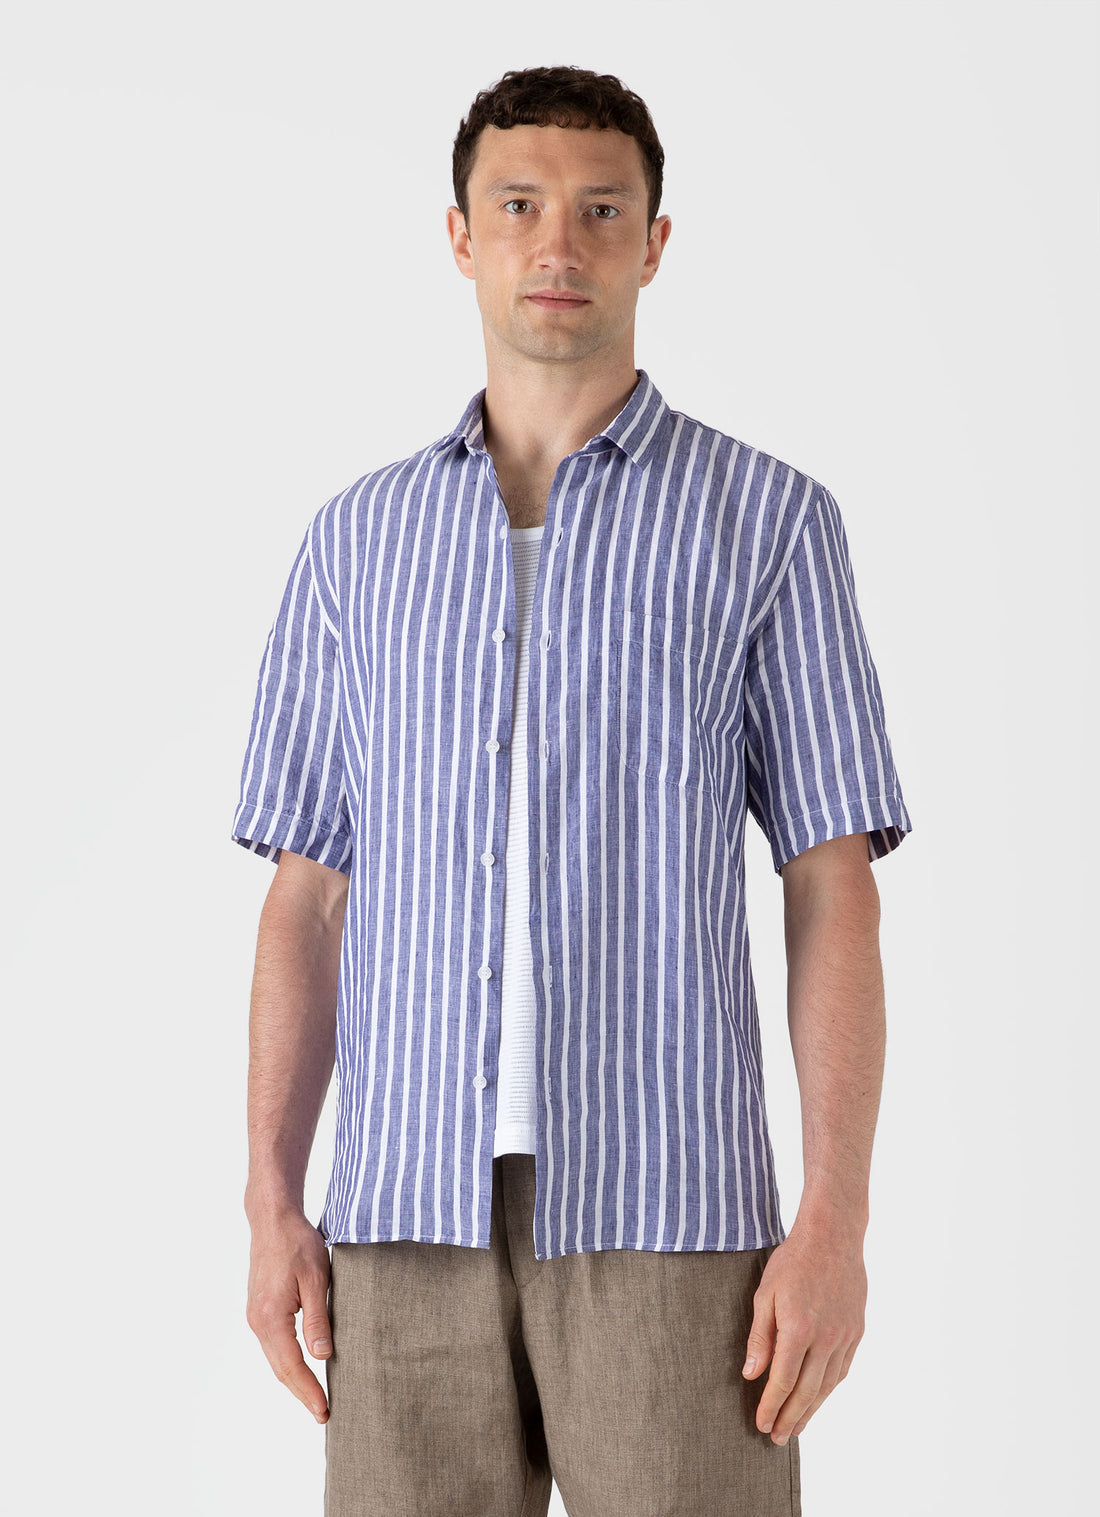 Men's Short Sleeve Linen Shirt in Navy/White